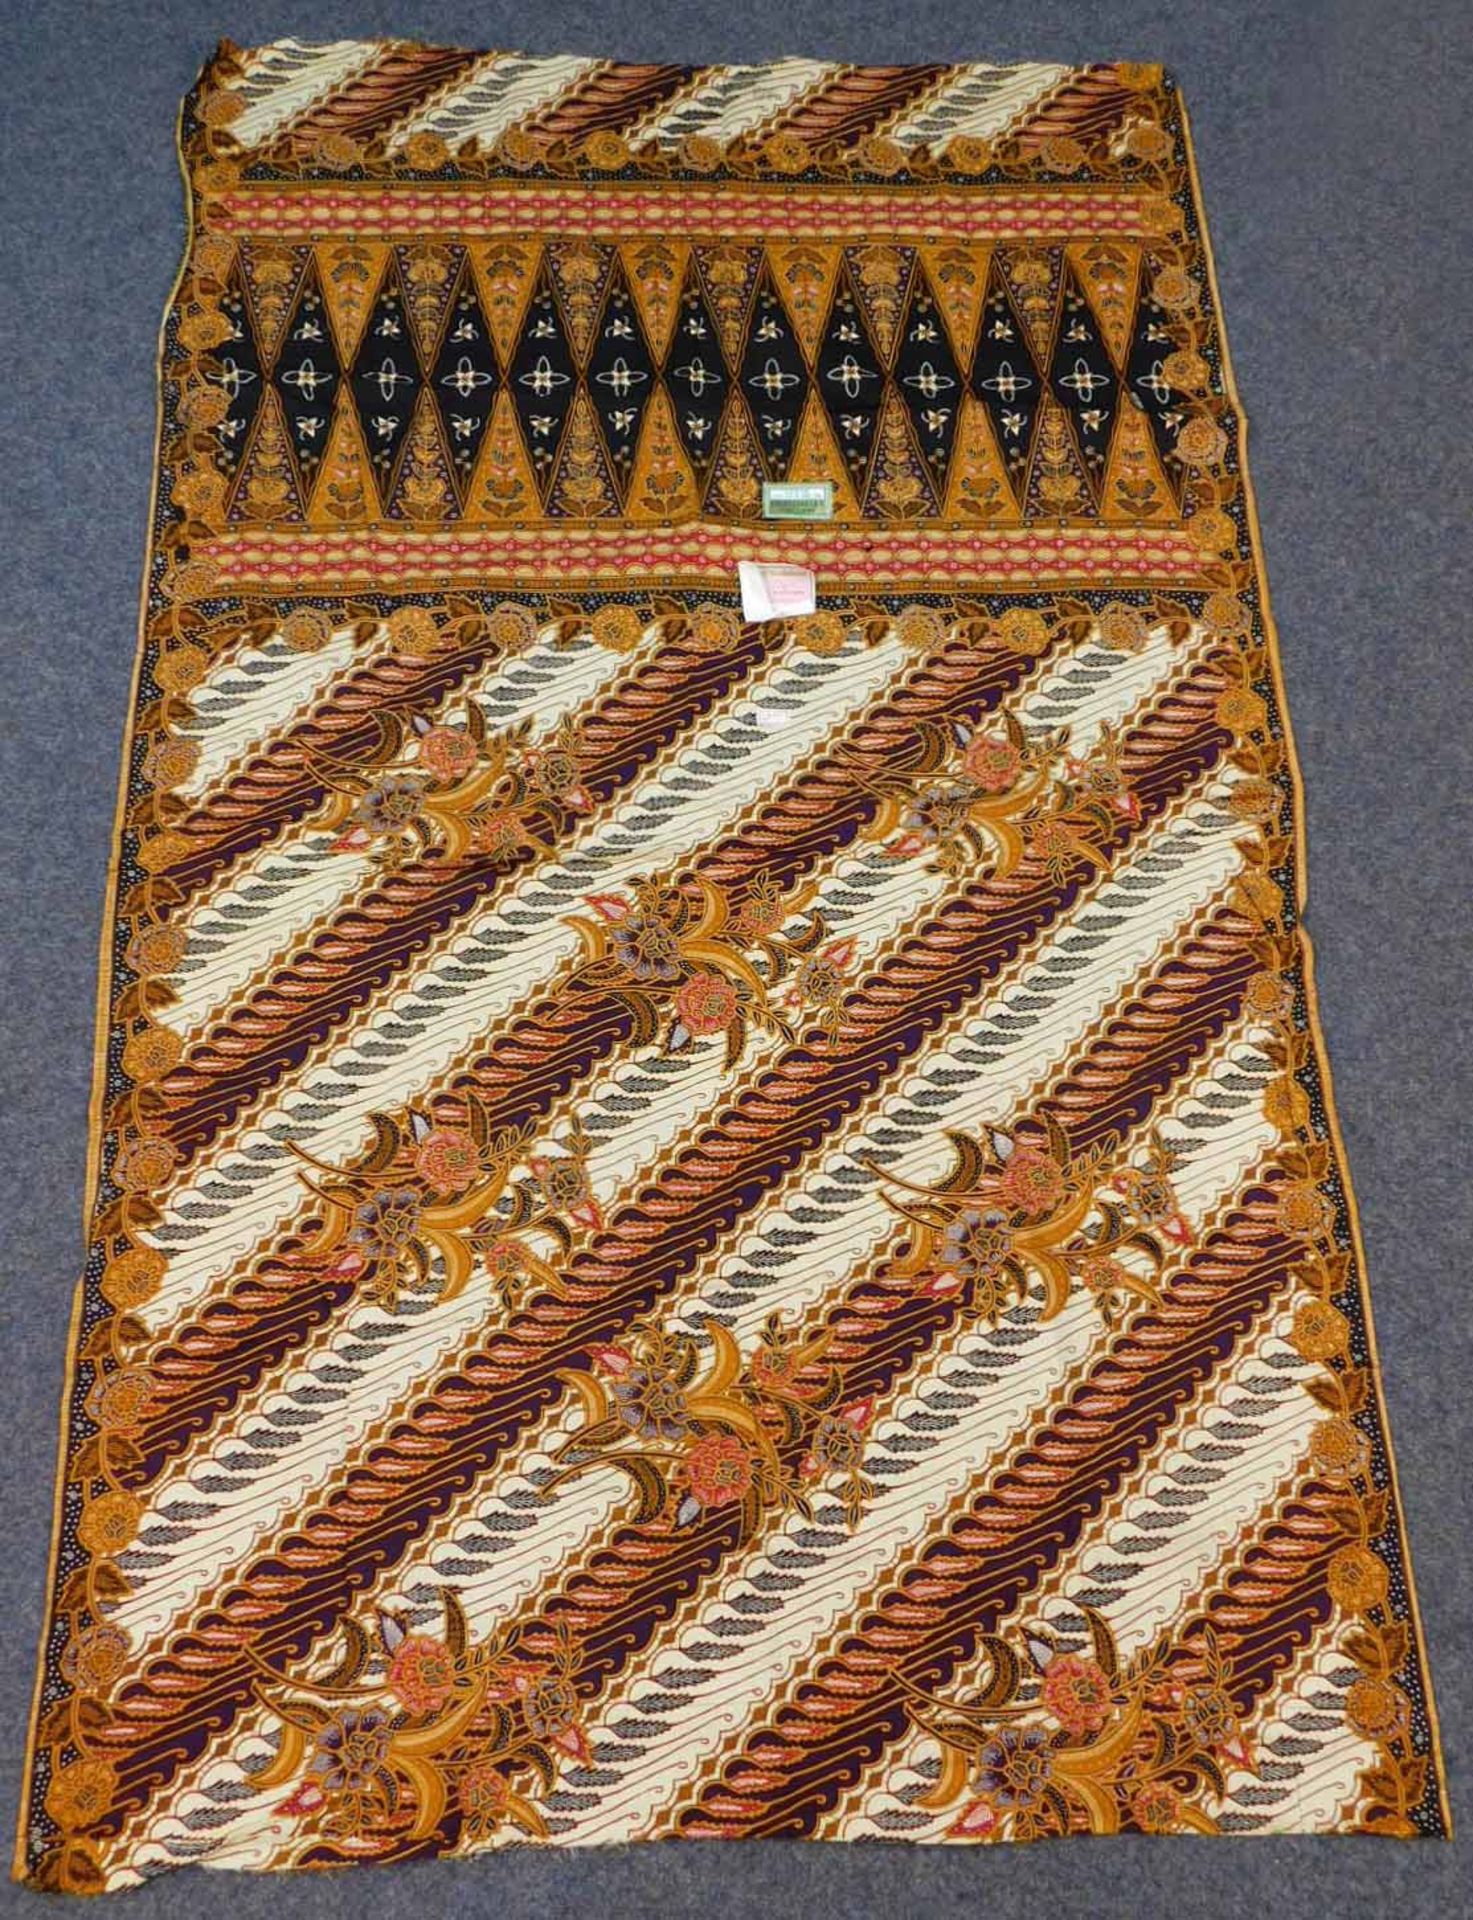 4 x Indonesischer Batik Stoff, Handdruck. - Image 9 of 10